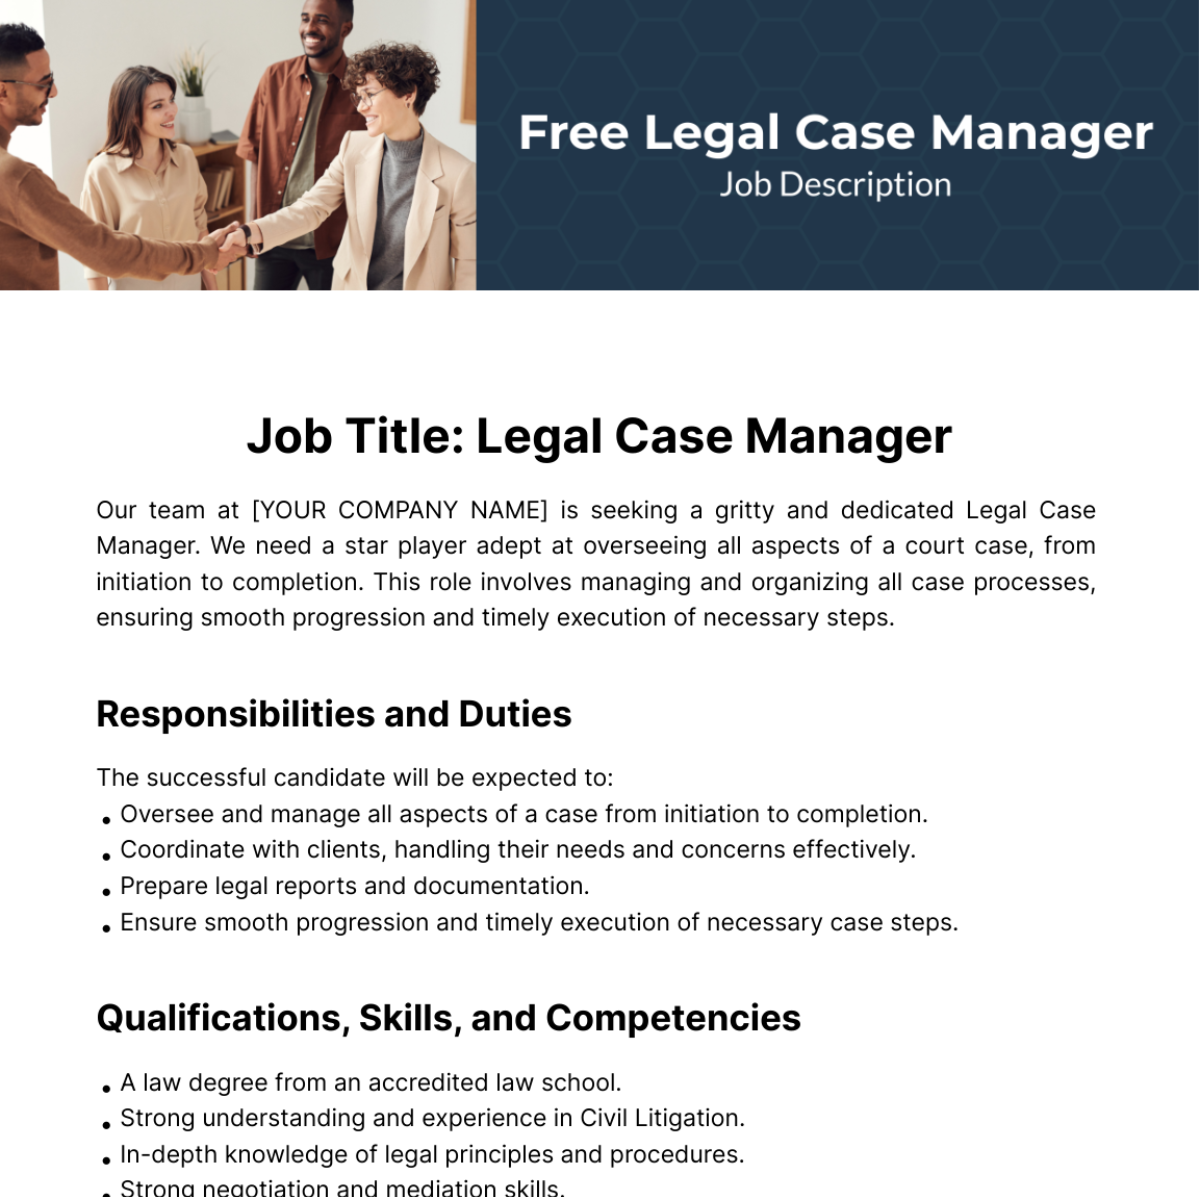 Free Legal Case Manager Job Description Template